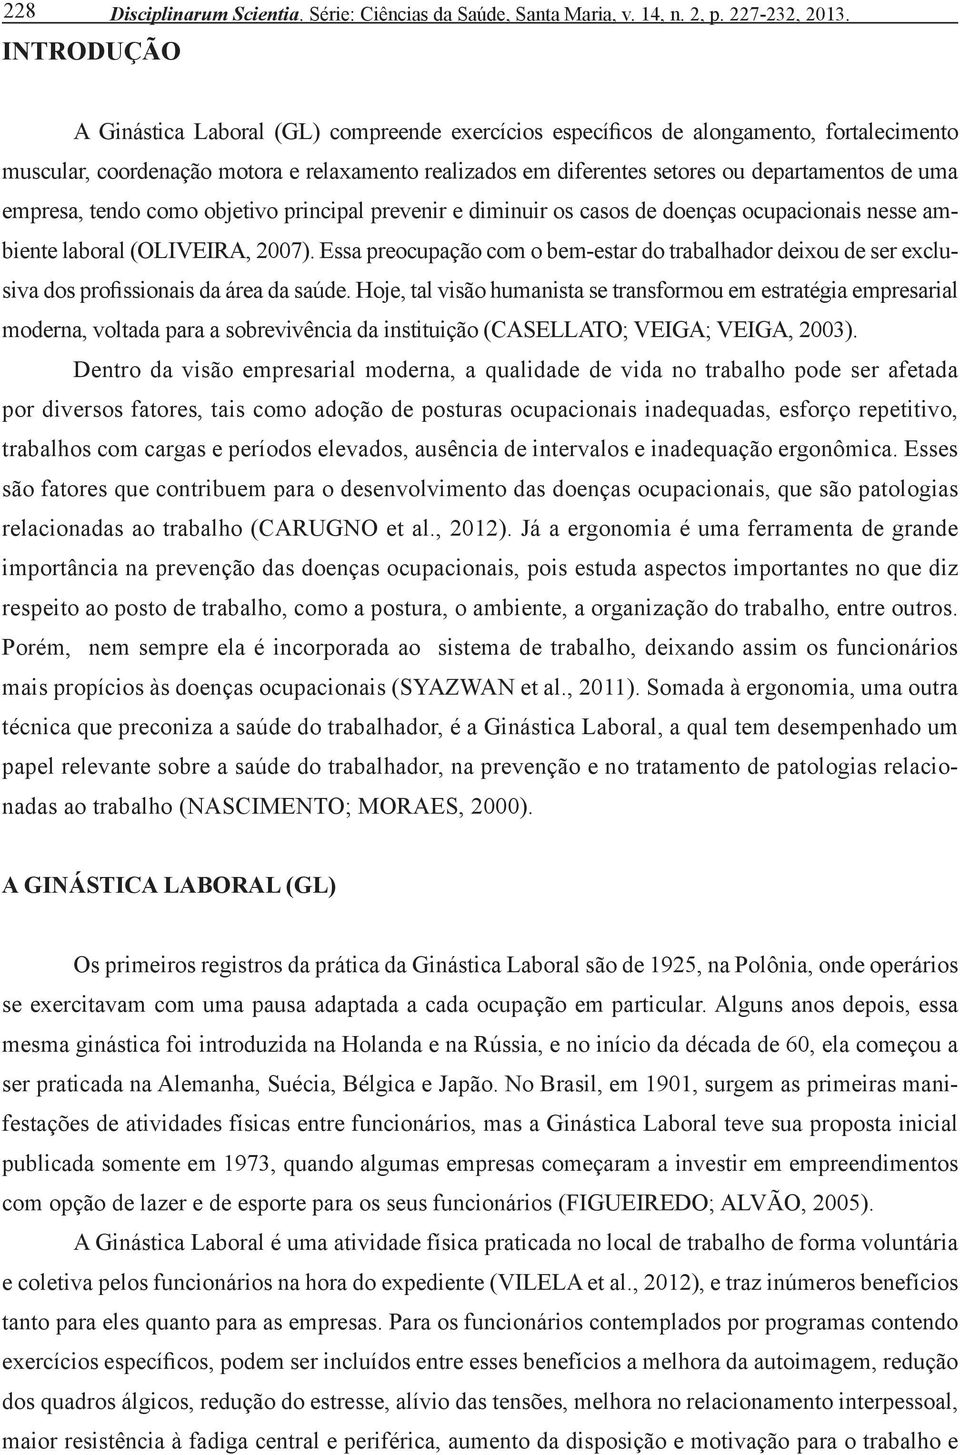 tendo como objetivo principal prevenir e diminuir os casos de doenças ocupacionais nesse ambiente laboral (Oliveira, 2007).